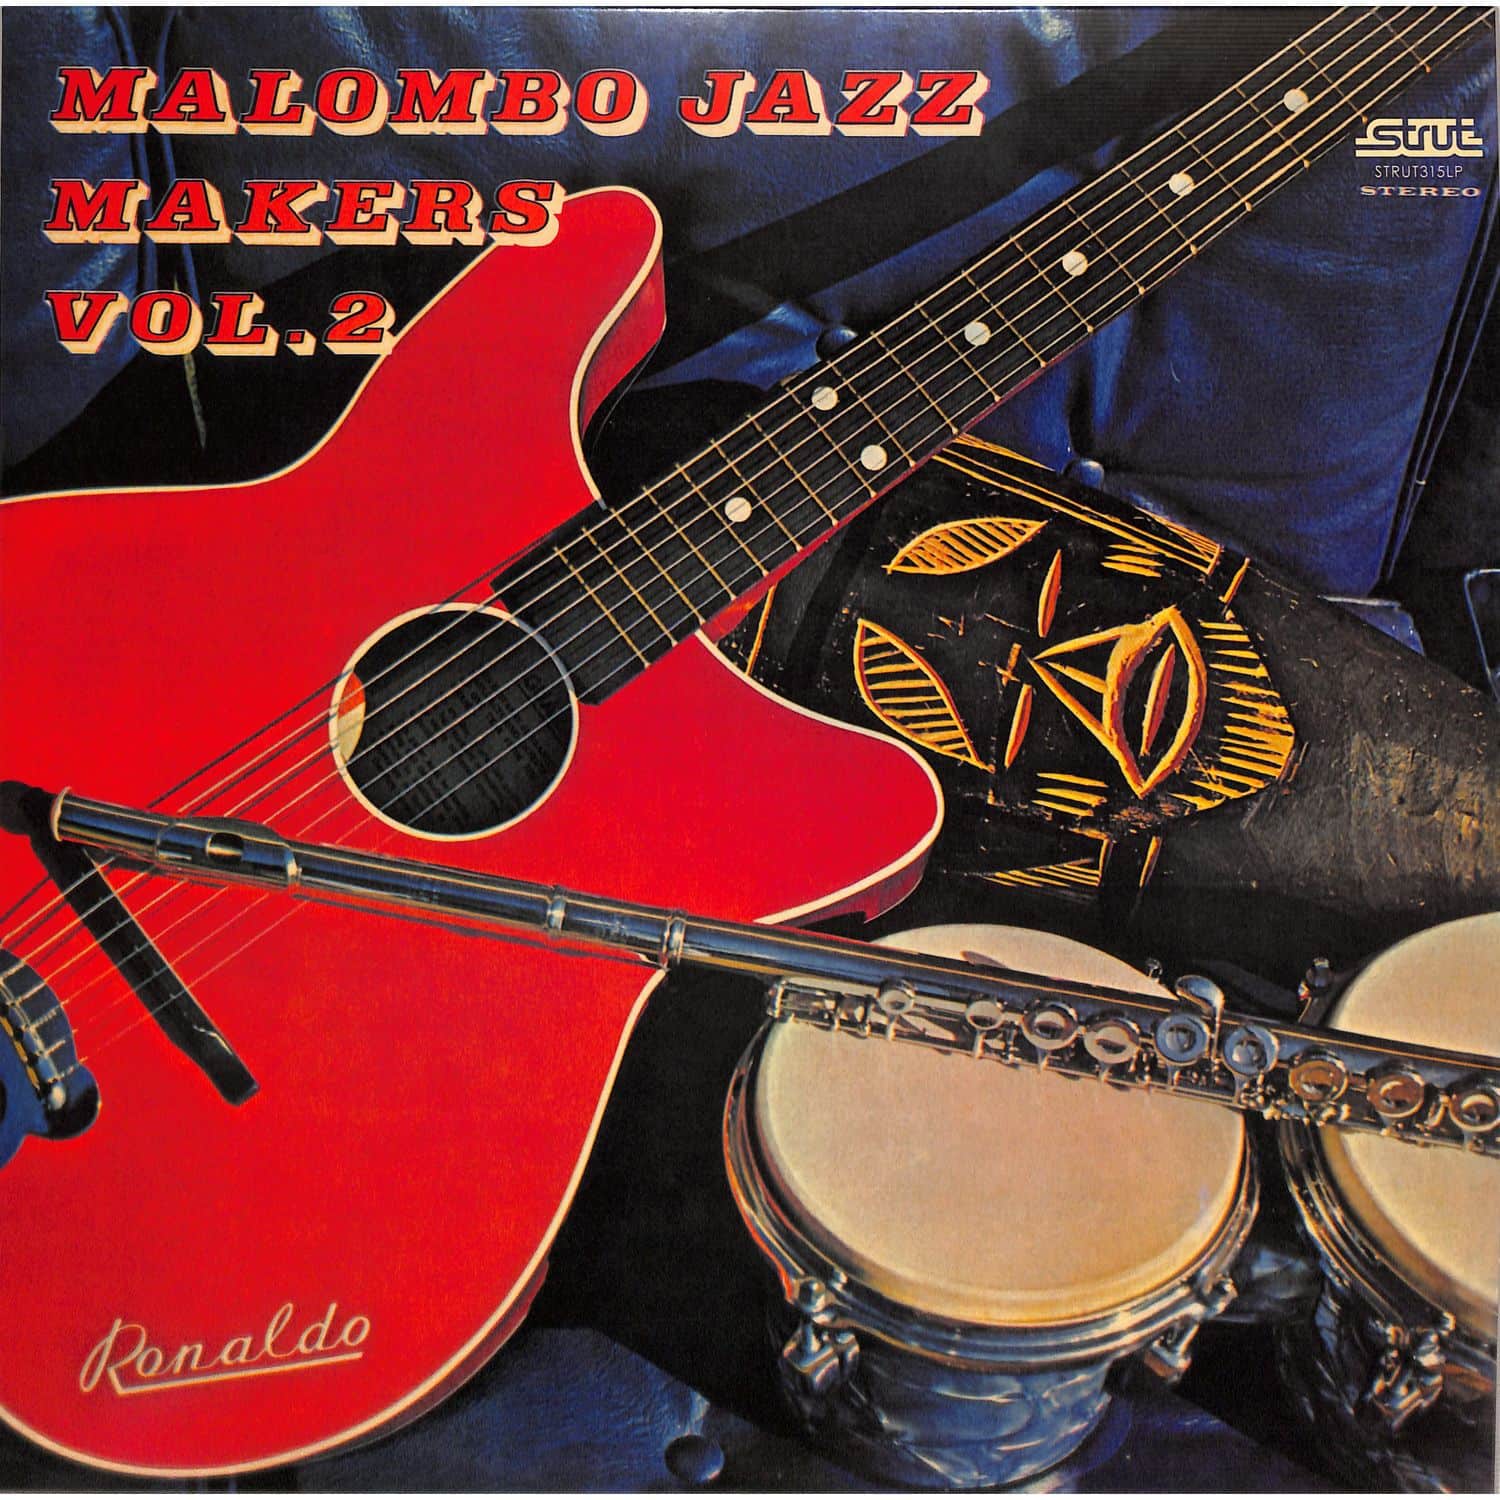 Malombo Jazz Makers - MALOMBO JAZZ MAKERS VOL.2 